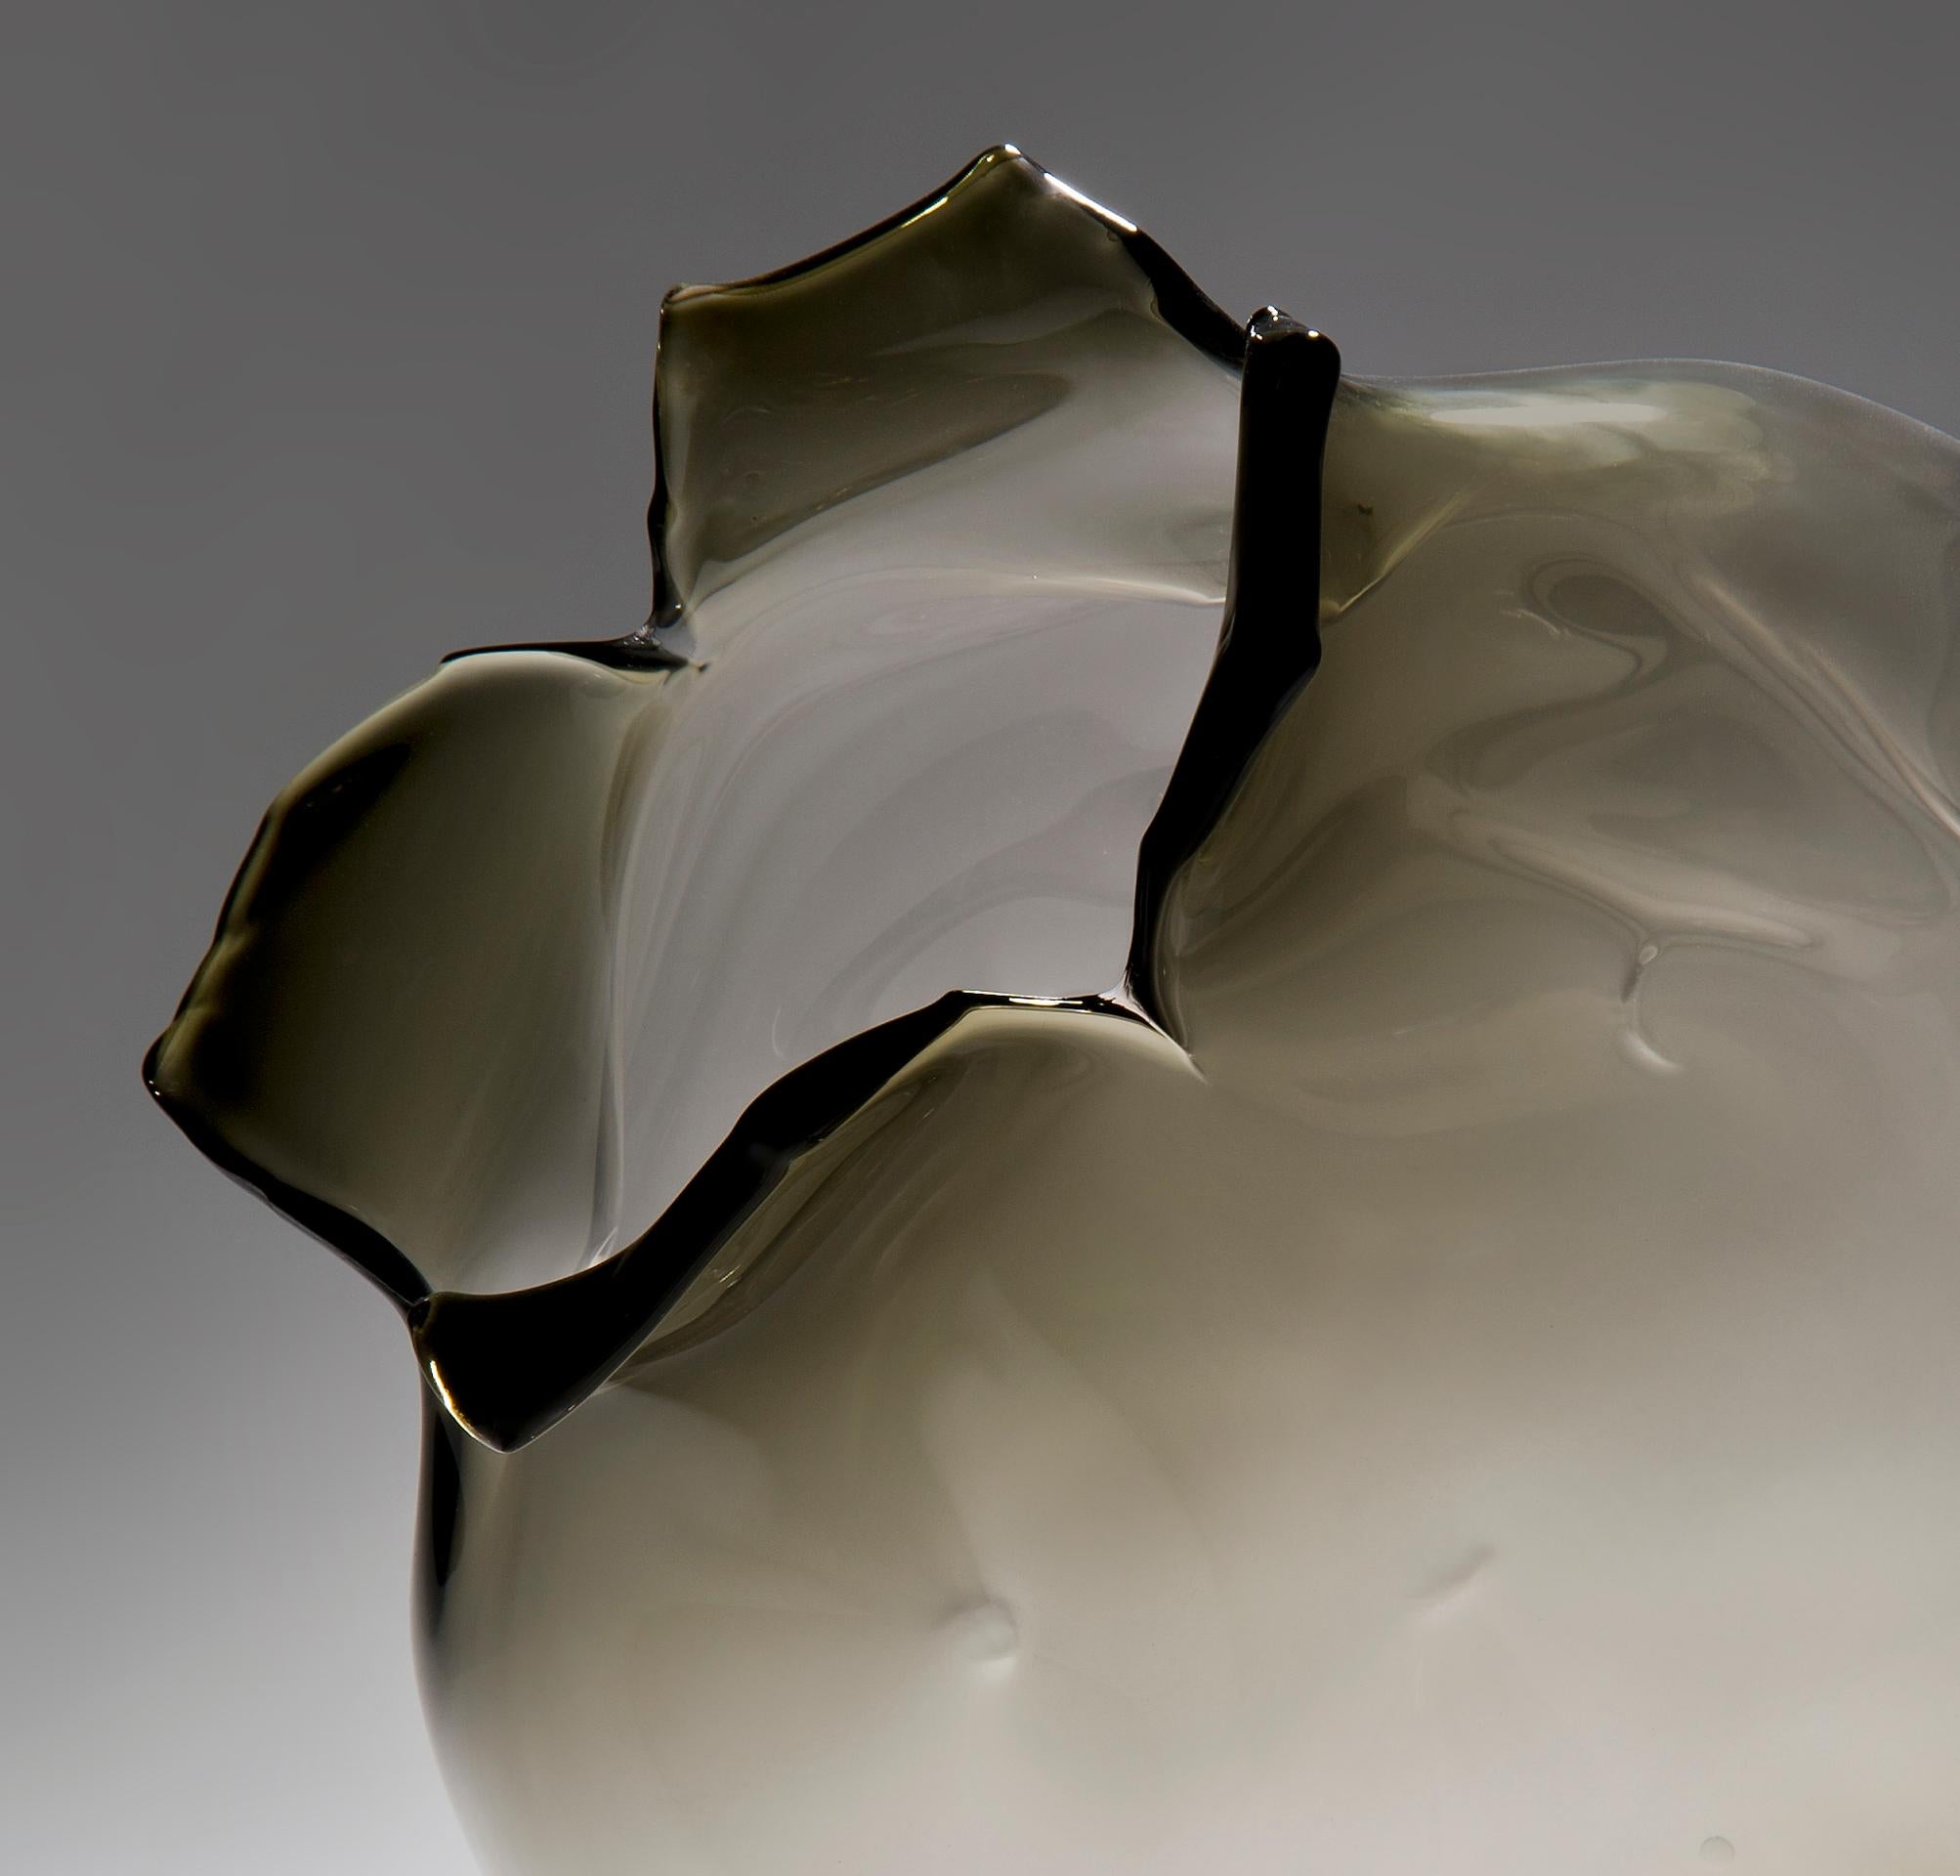 Art Glass Spirit Fruit in Bronze, a Unique Glass Sculpture by Jeremy Maxwell Wintrebert